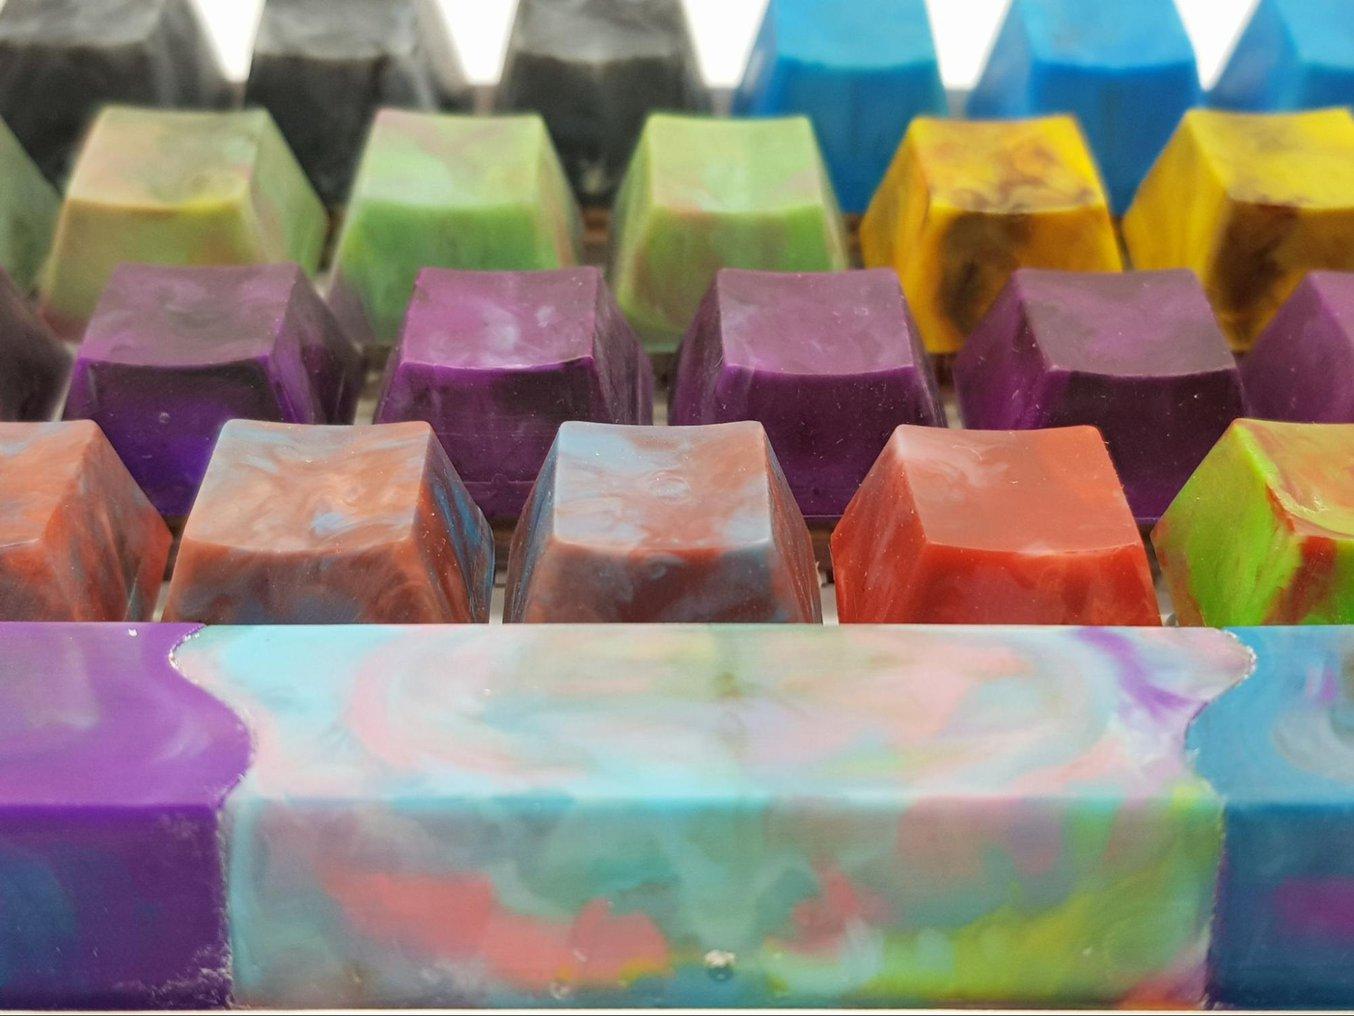 Les touches recyclées moulées par injection présentent des couleurs uniques.